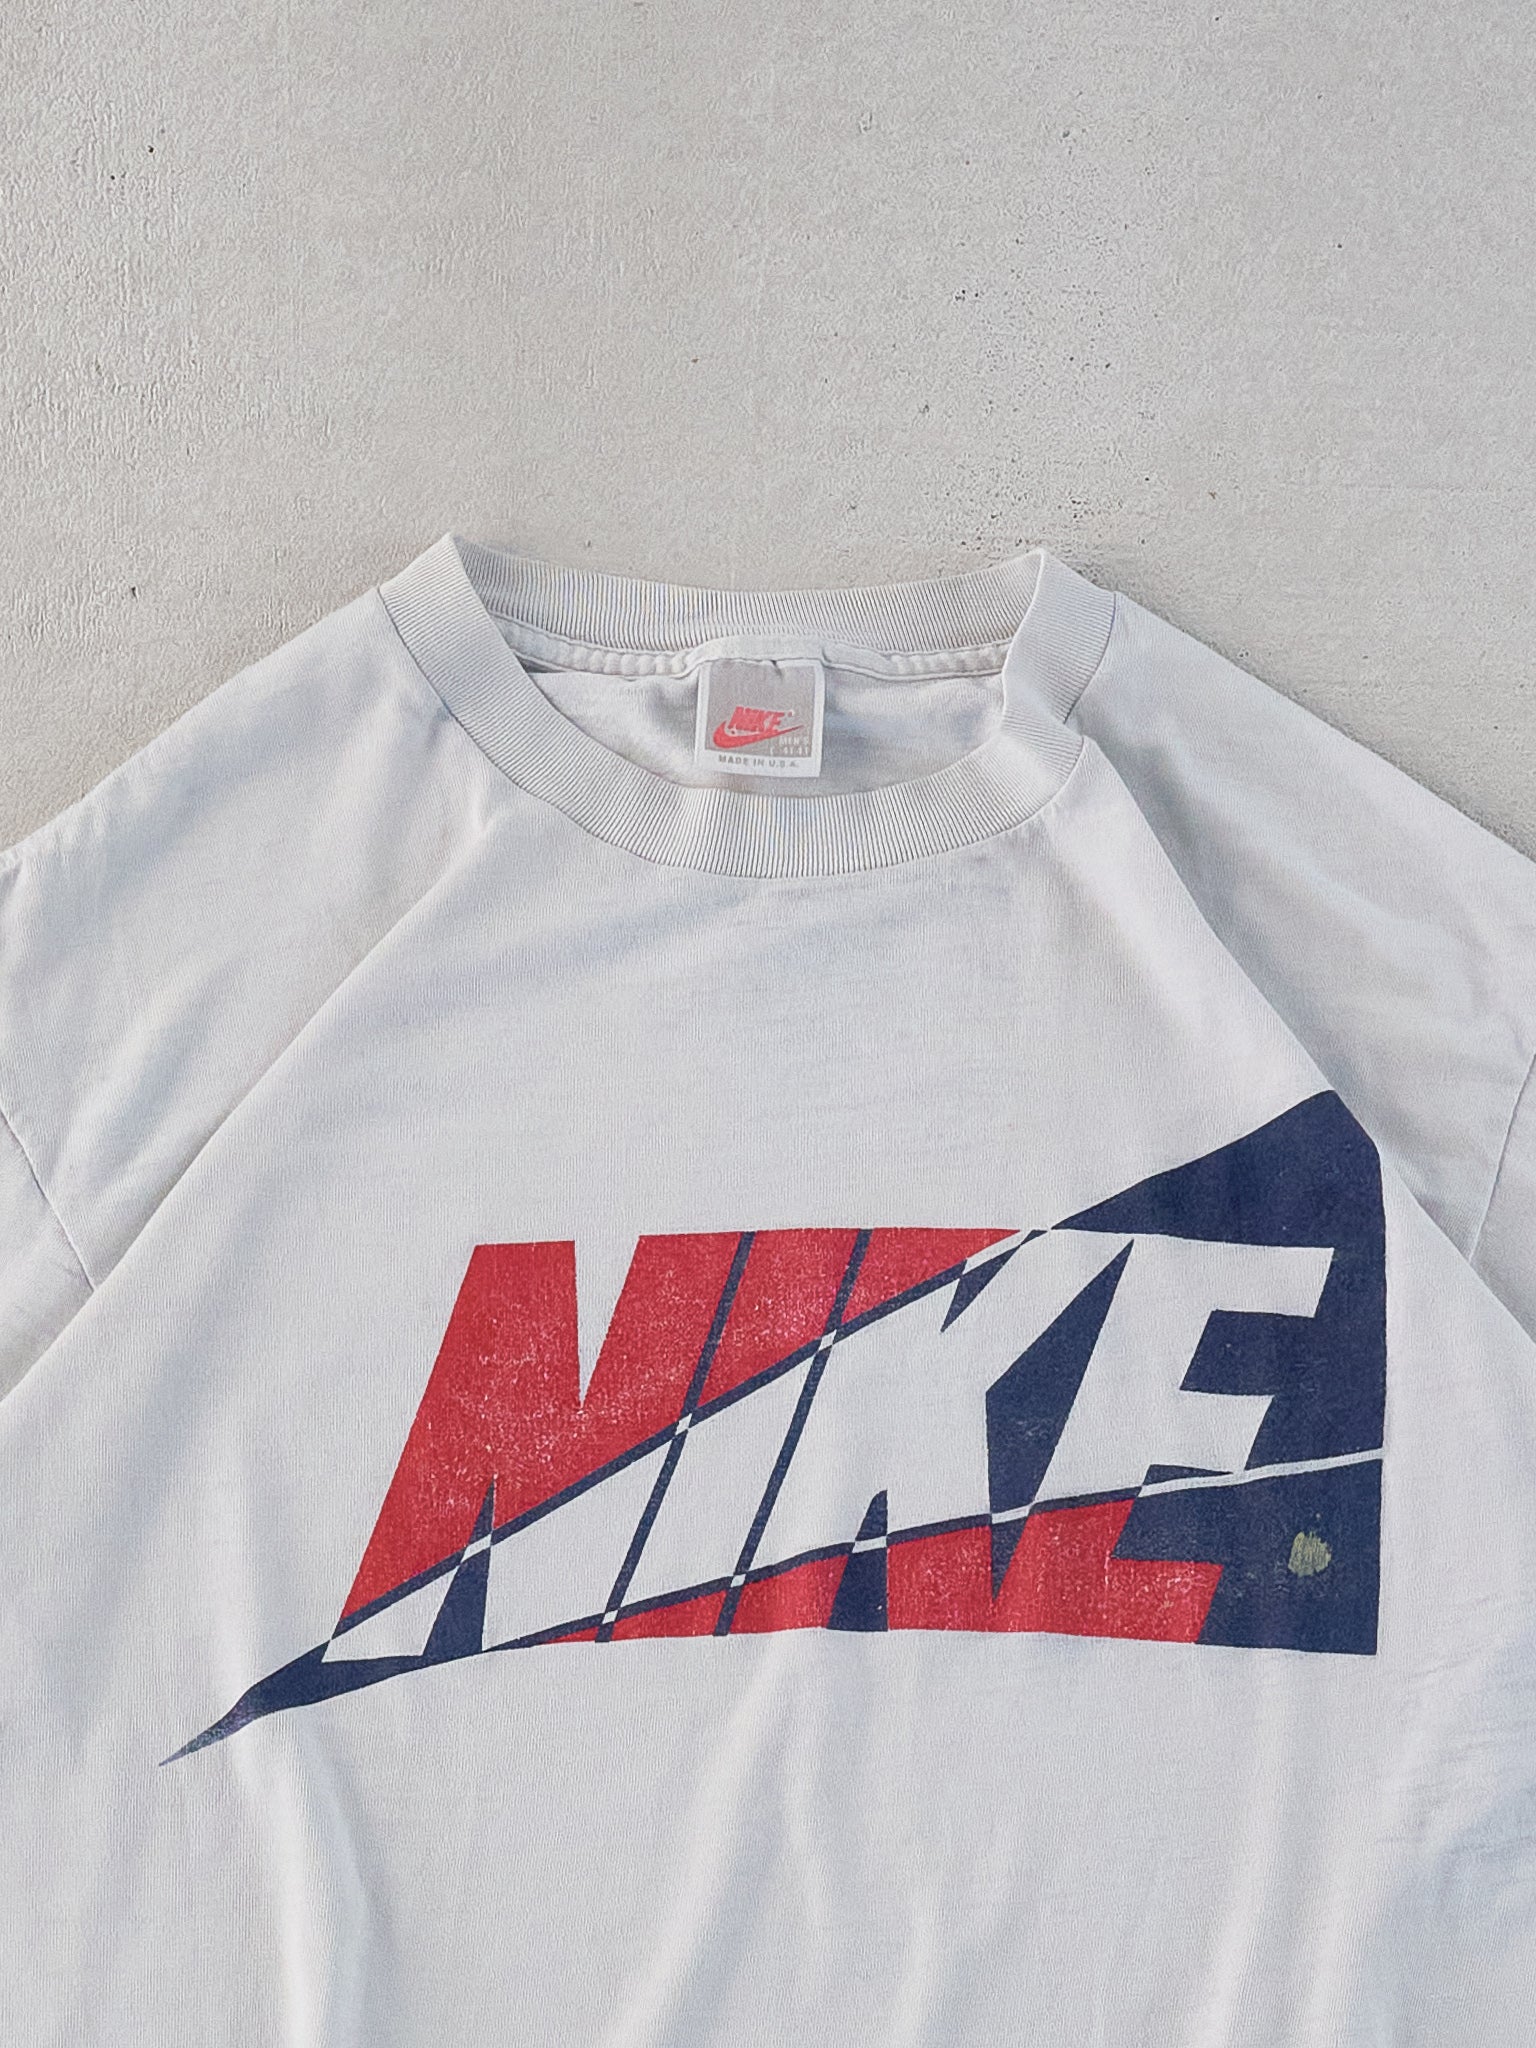 Vintage 90s White Nike Tri-colour Logo Tee (S/M)